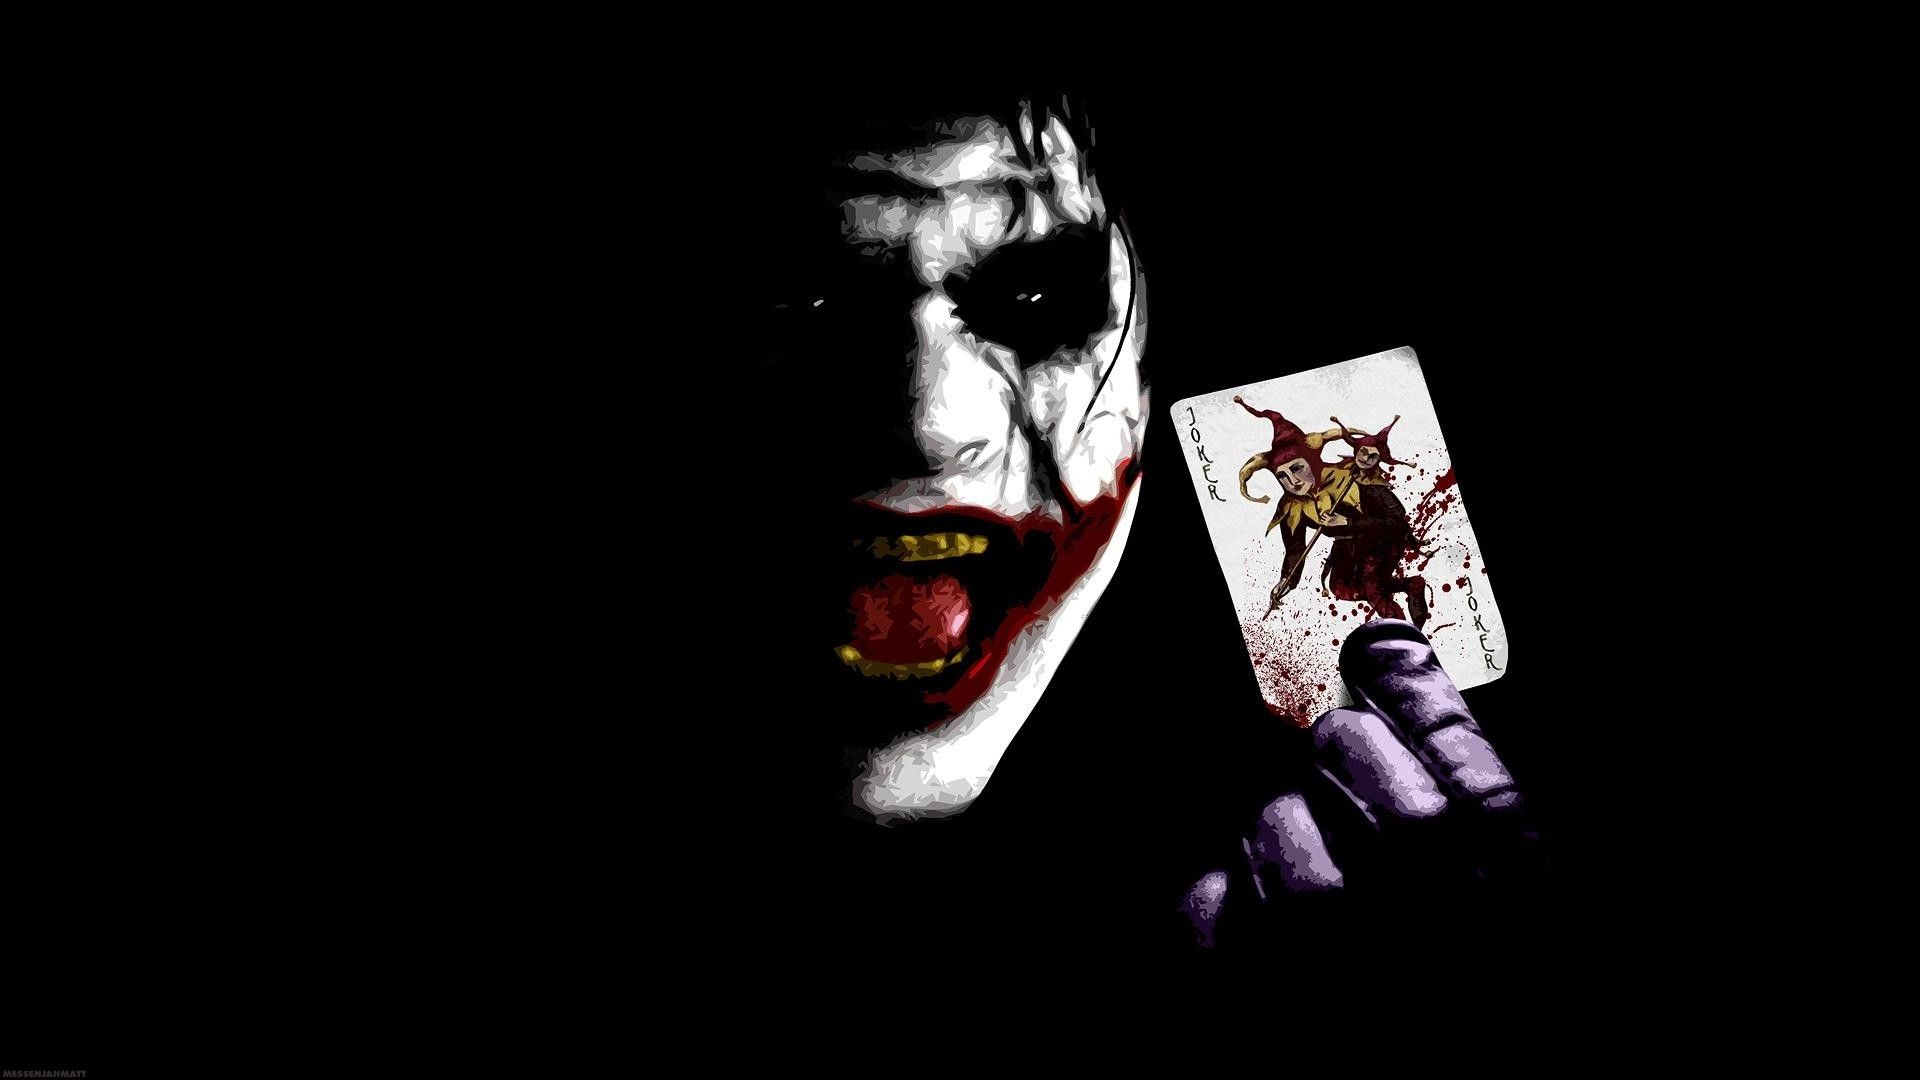 Bộ sưu tập ảnh Joker độc đáo - Hình nền Joker đầy ấn tượng